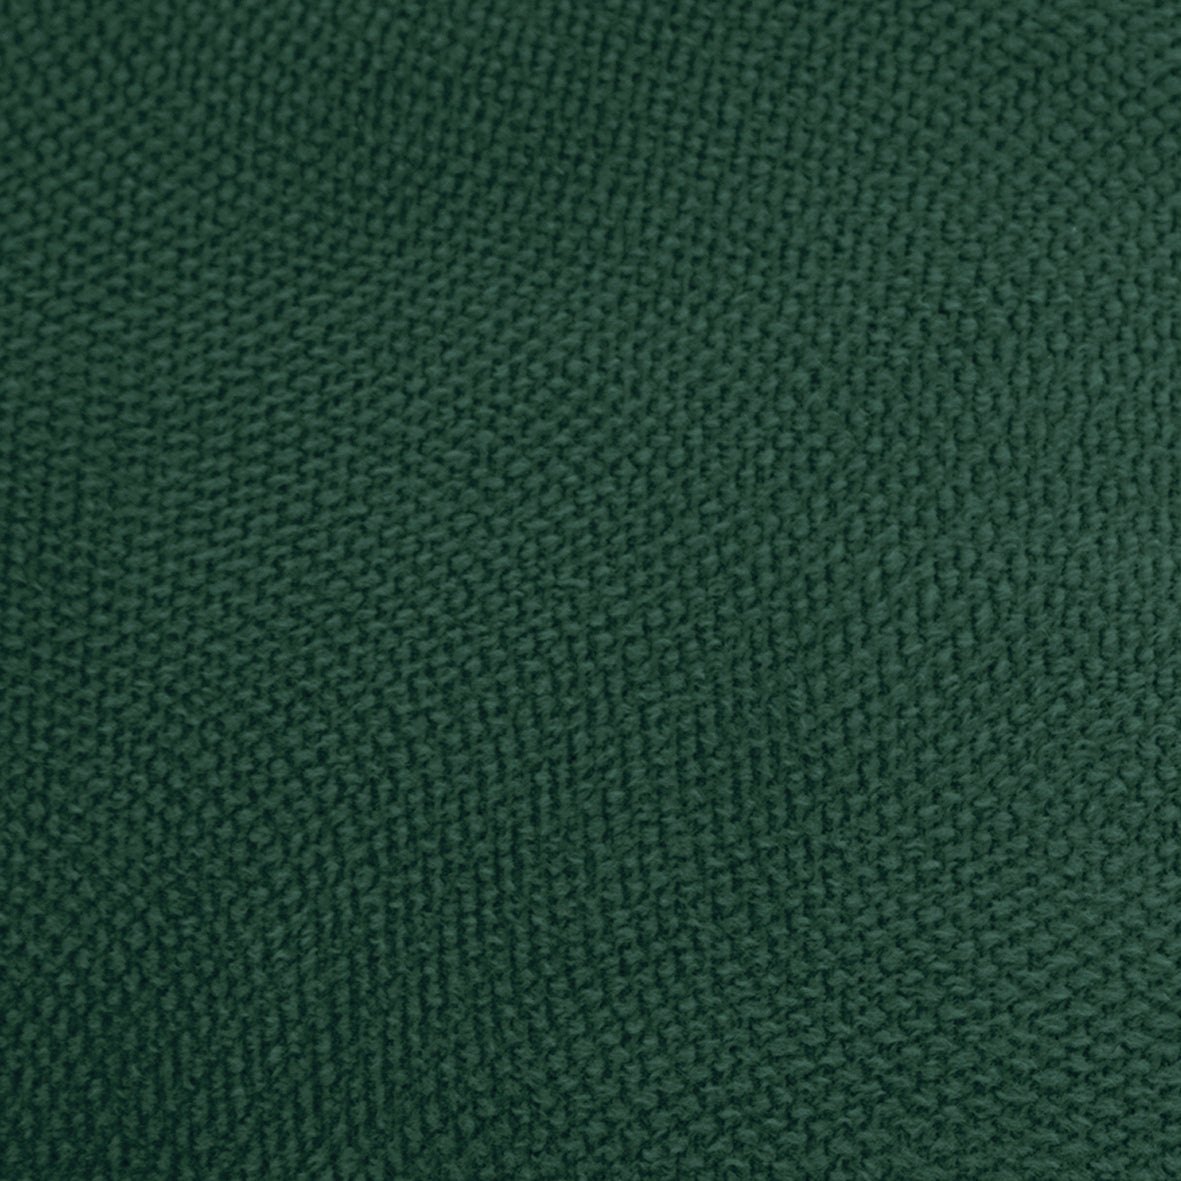 Cushion Green 50 x 12 x 30 cm